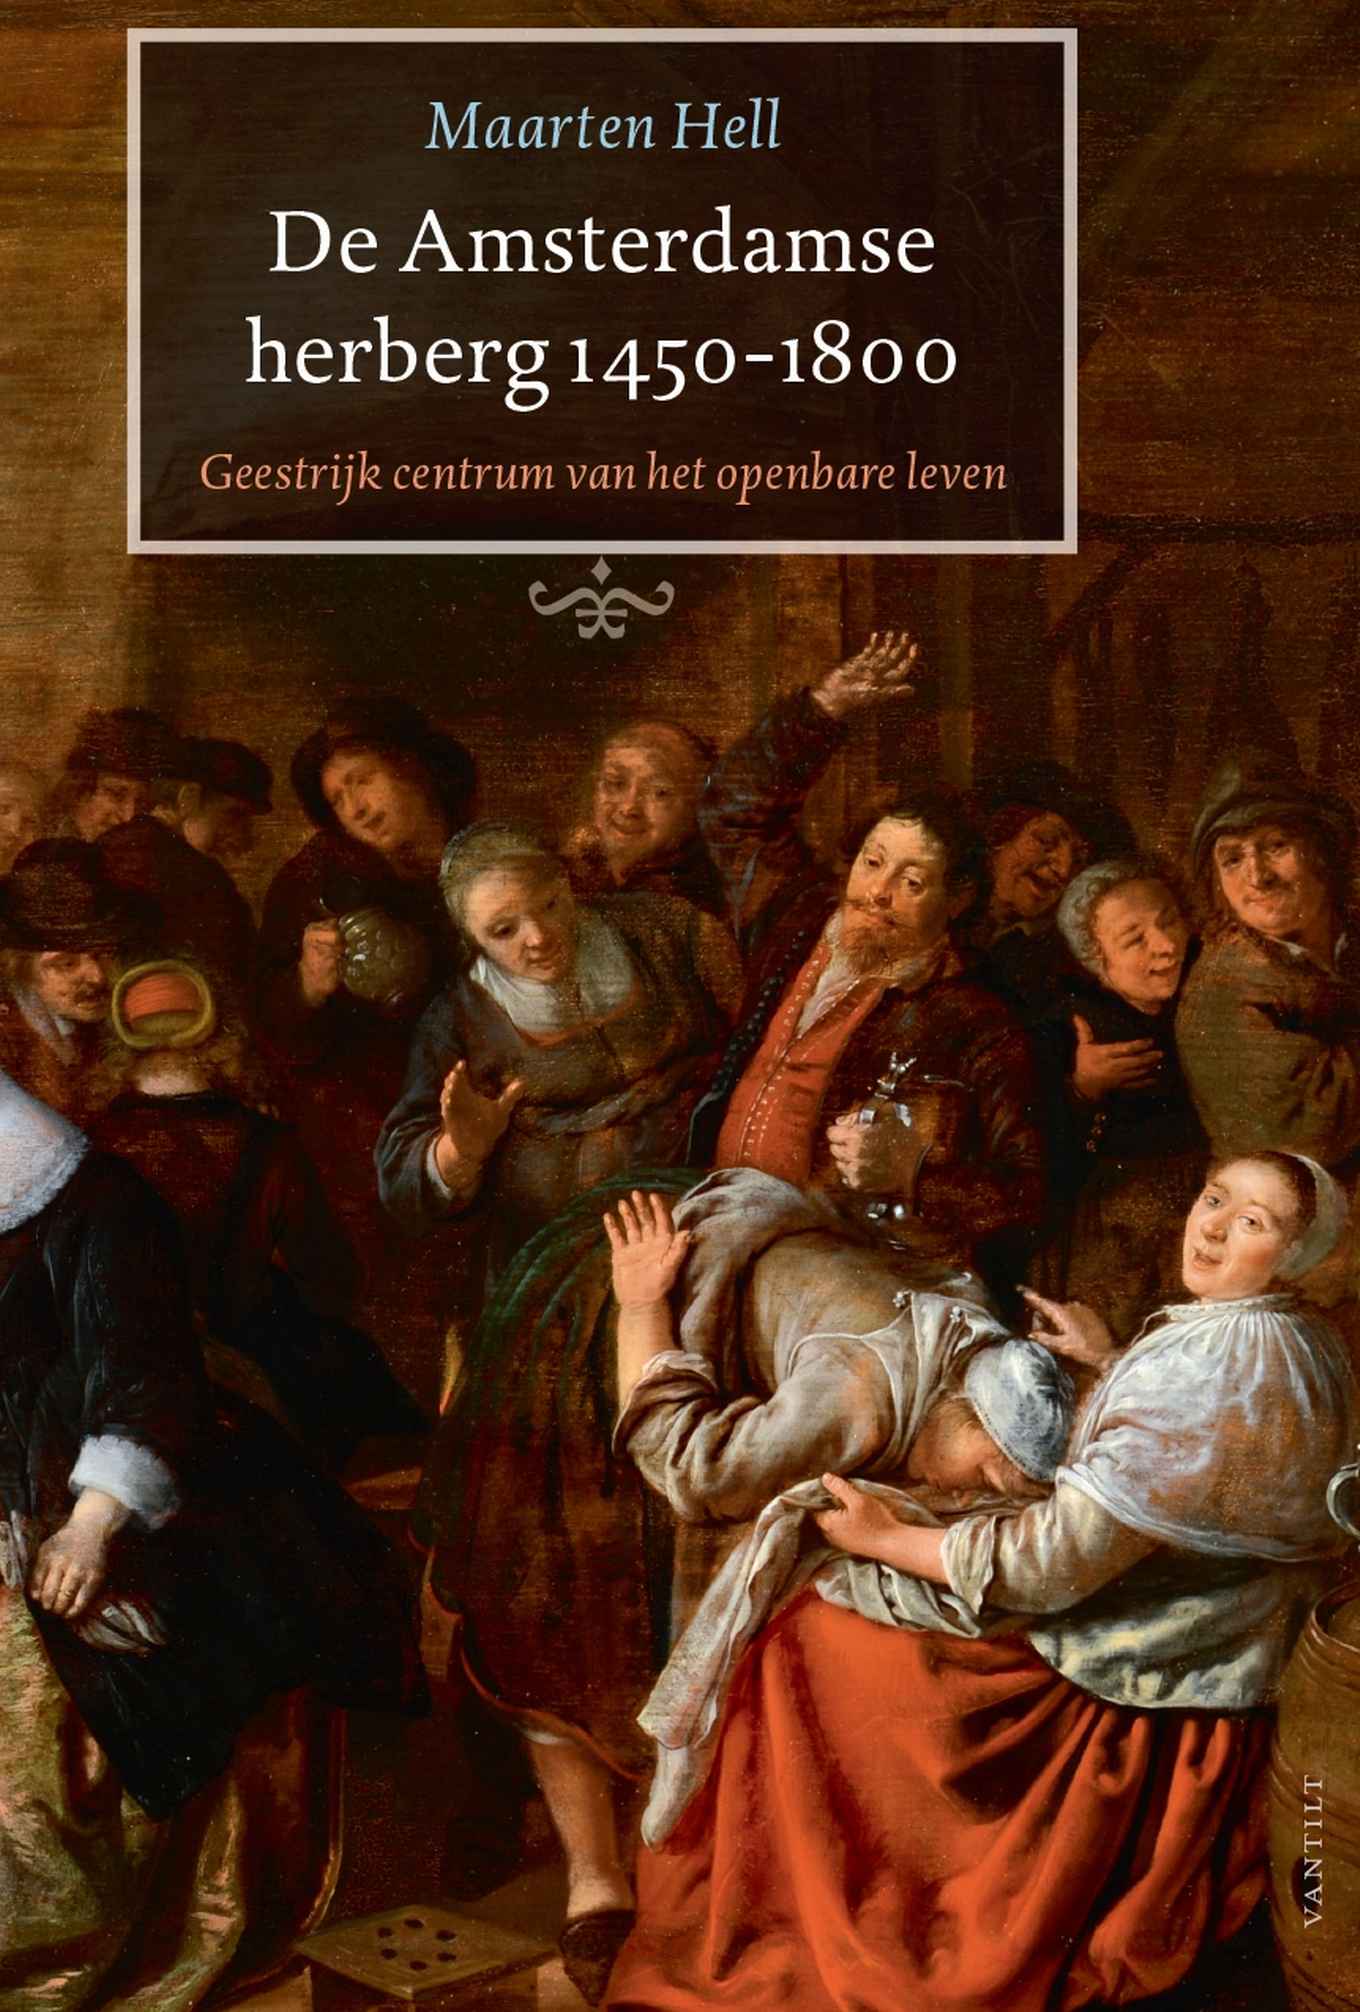 Maarten Hell 'De Amsterdamse herberg 450-1800'